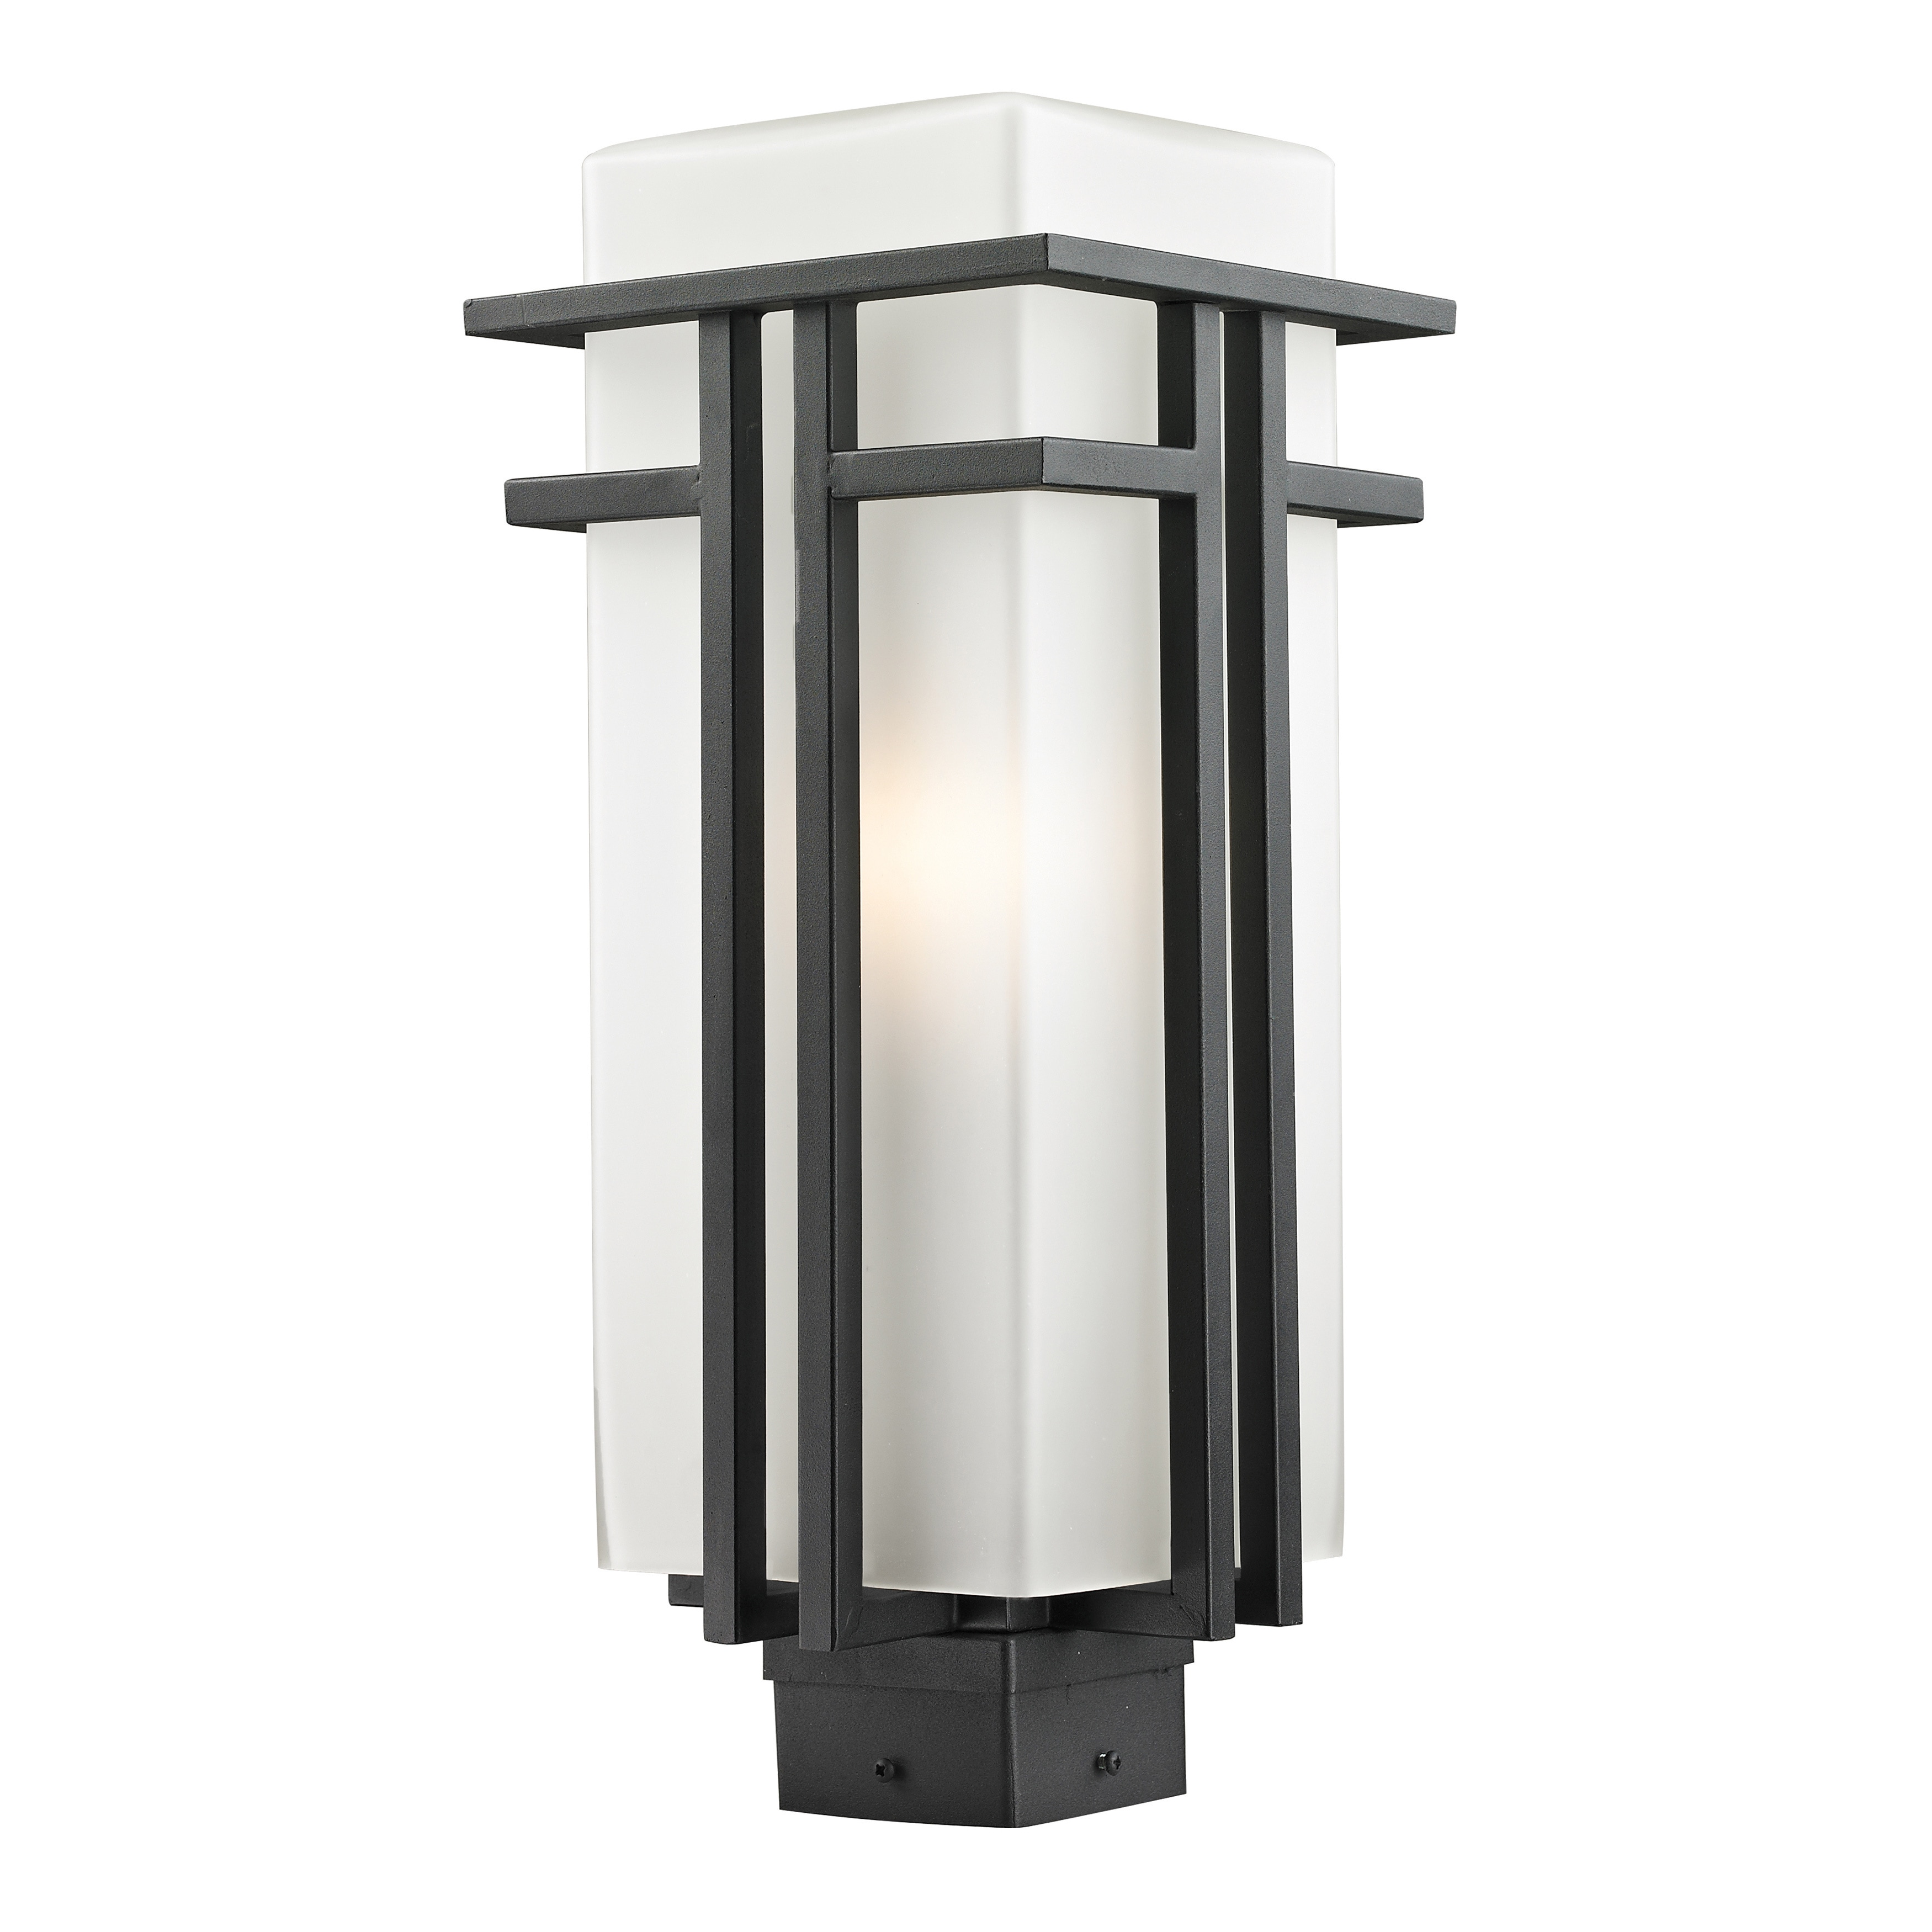 Eglo 92738 LED Light Modern Outdoor Post Light In Stainless Steel Finish